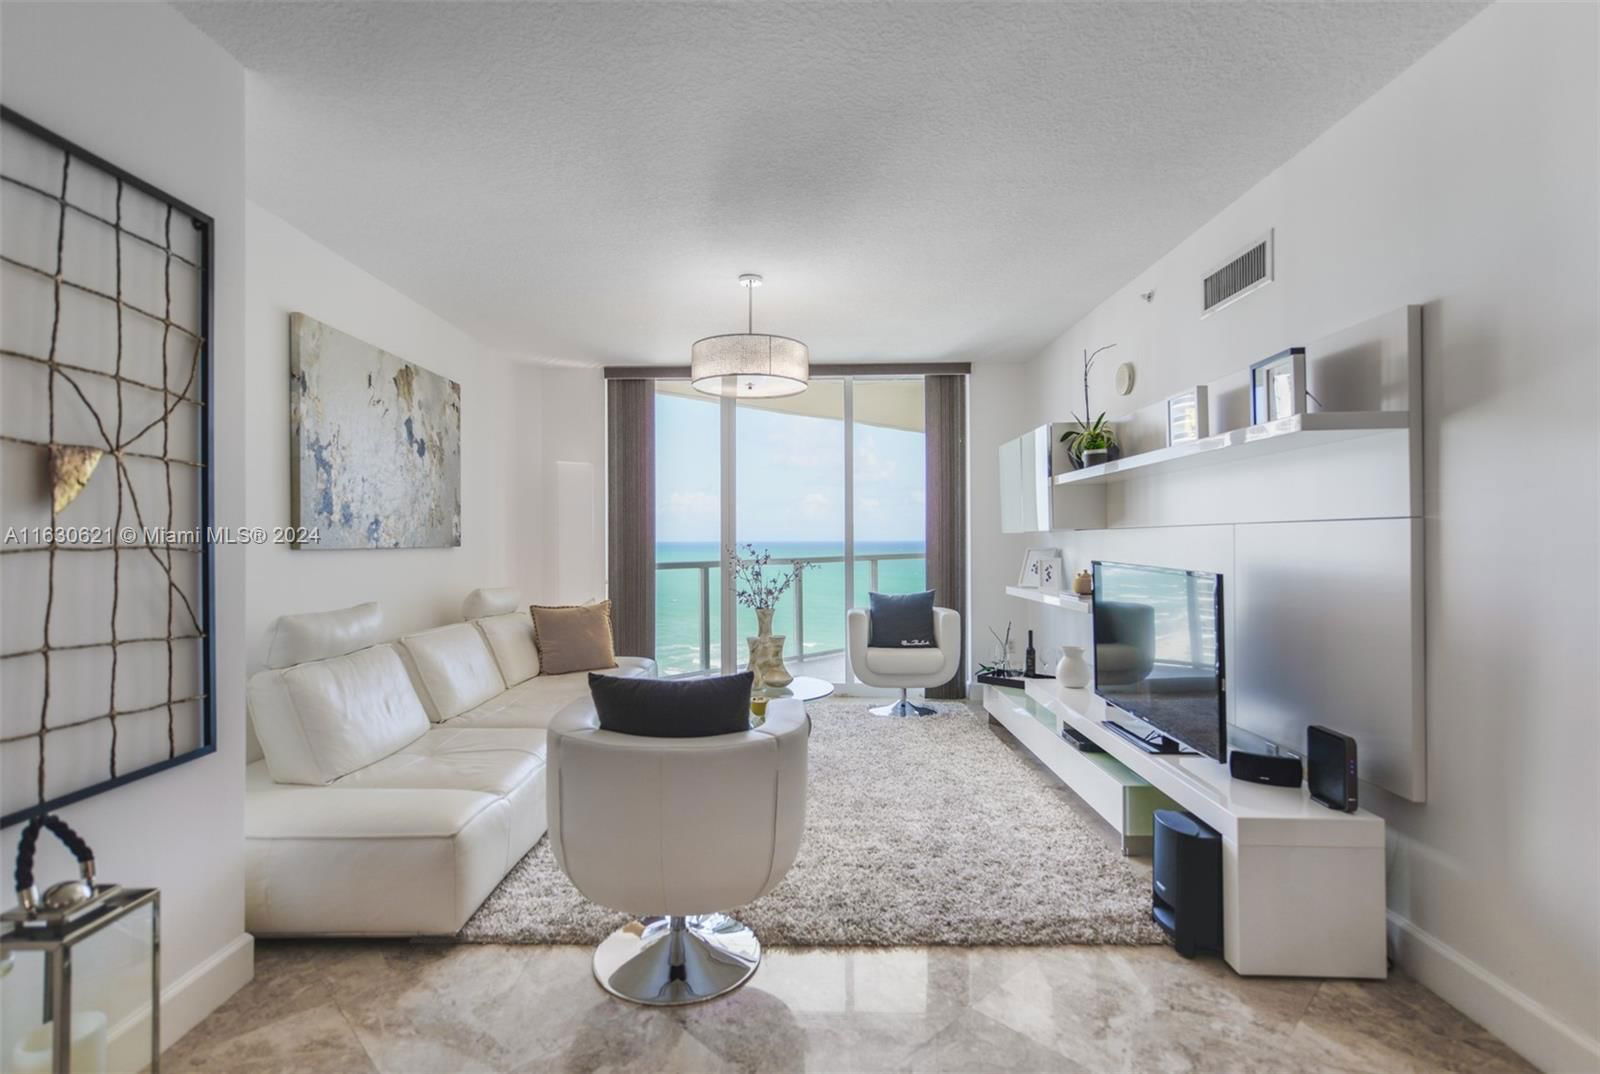 Real estate property located at , Miami-Dade County, LA PERLA CONDO, Sunny Isles Beach, FL